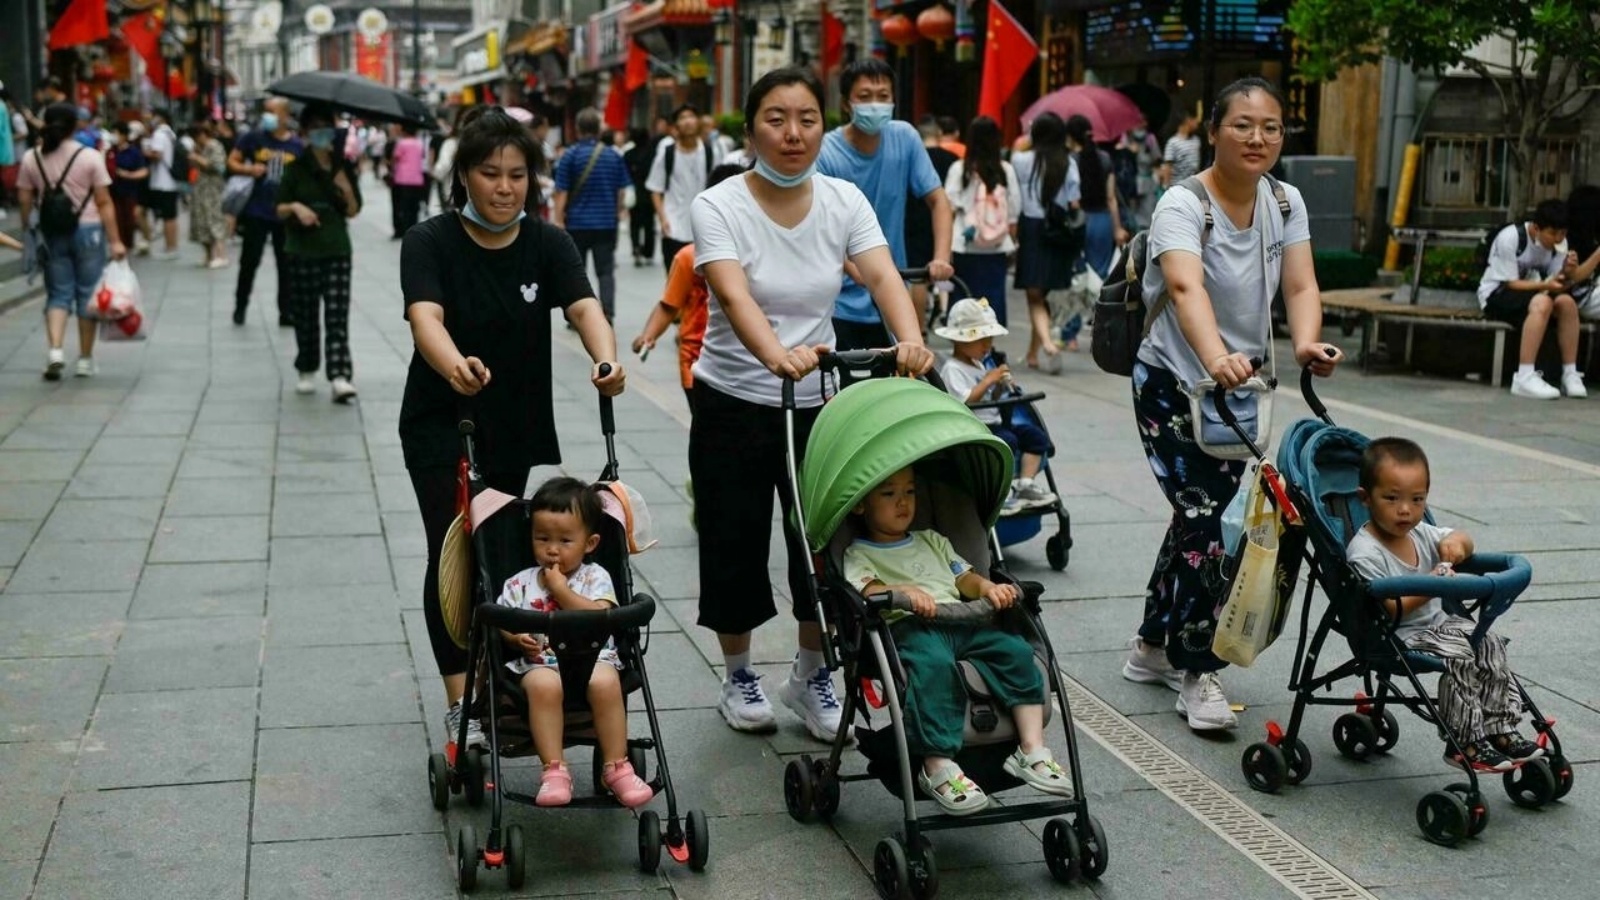 ثلاث نساء يسرن مع عربات أطفال في بكين في 13 تموز/يوليو 2021 